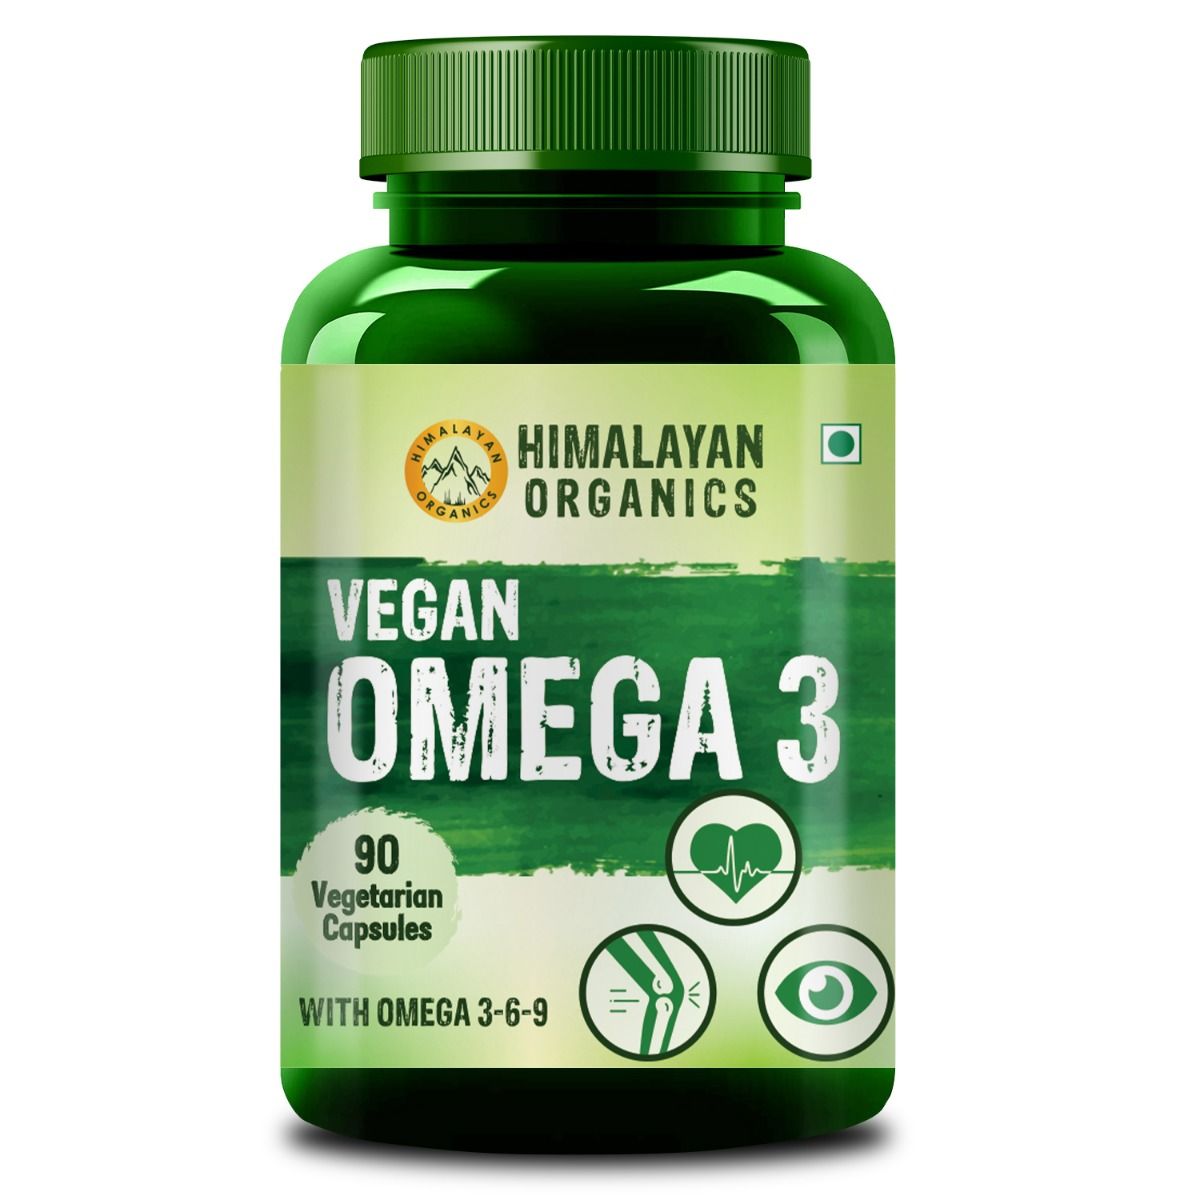 Buy Himalayan Organics Vegan Omega 3, 90 Capsules Online